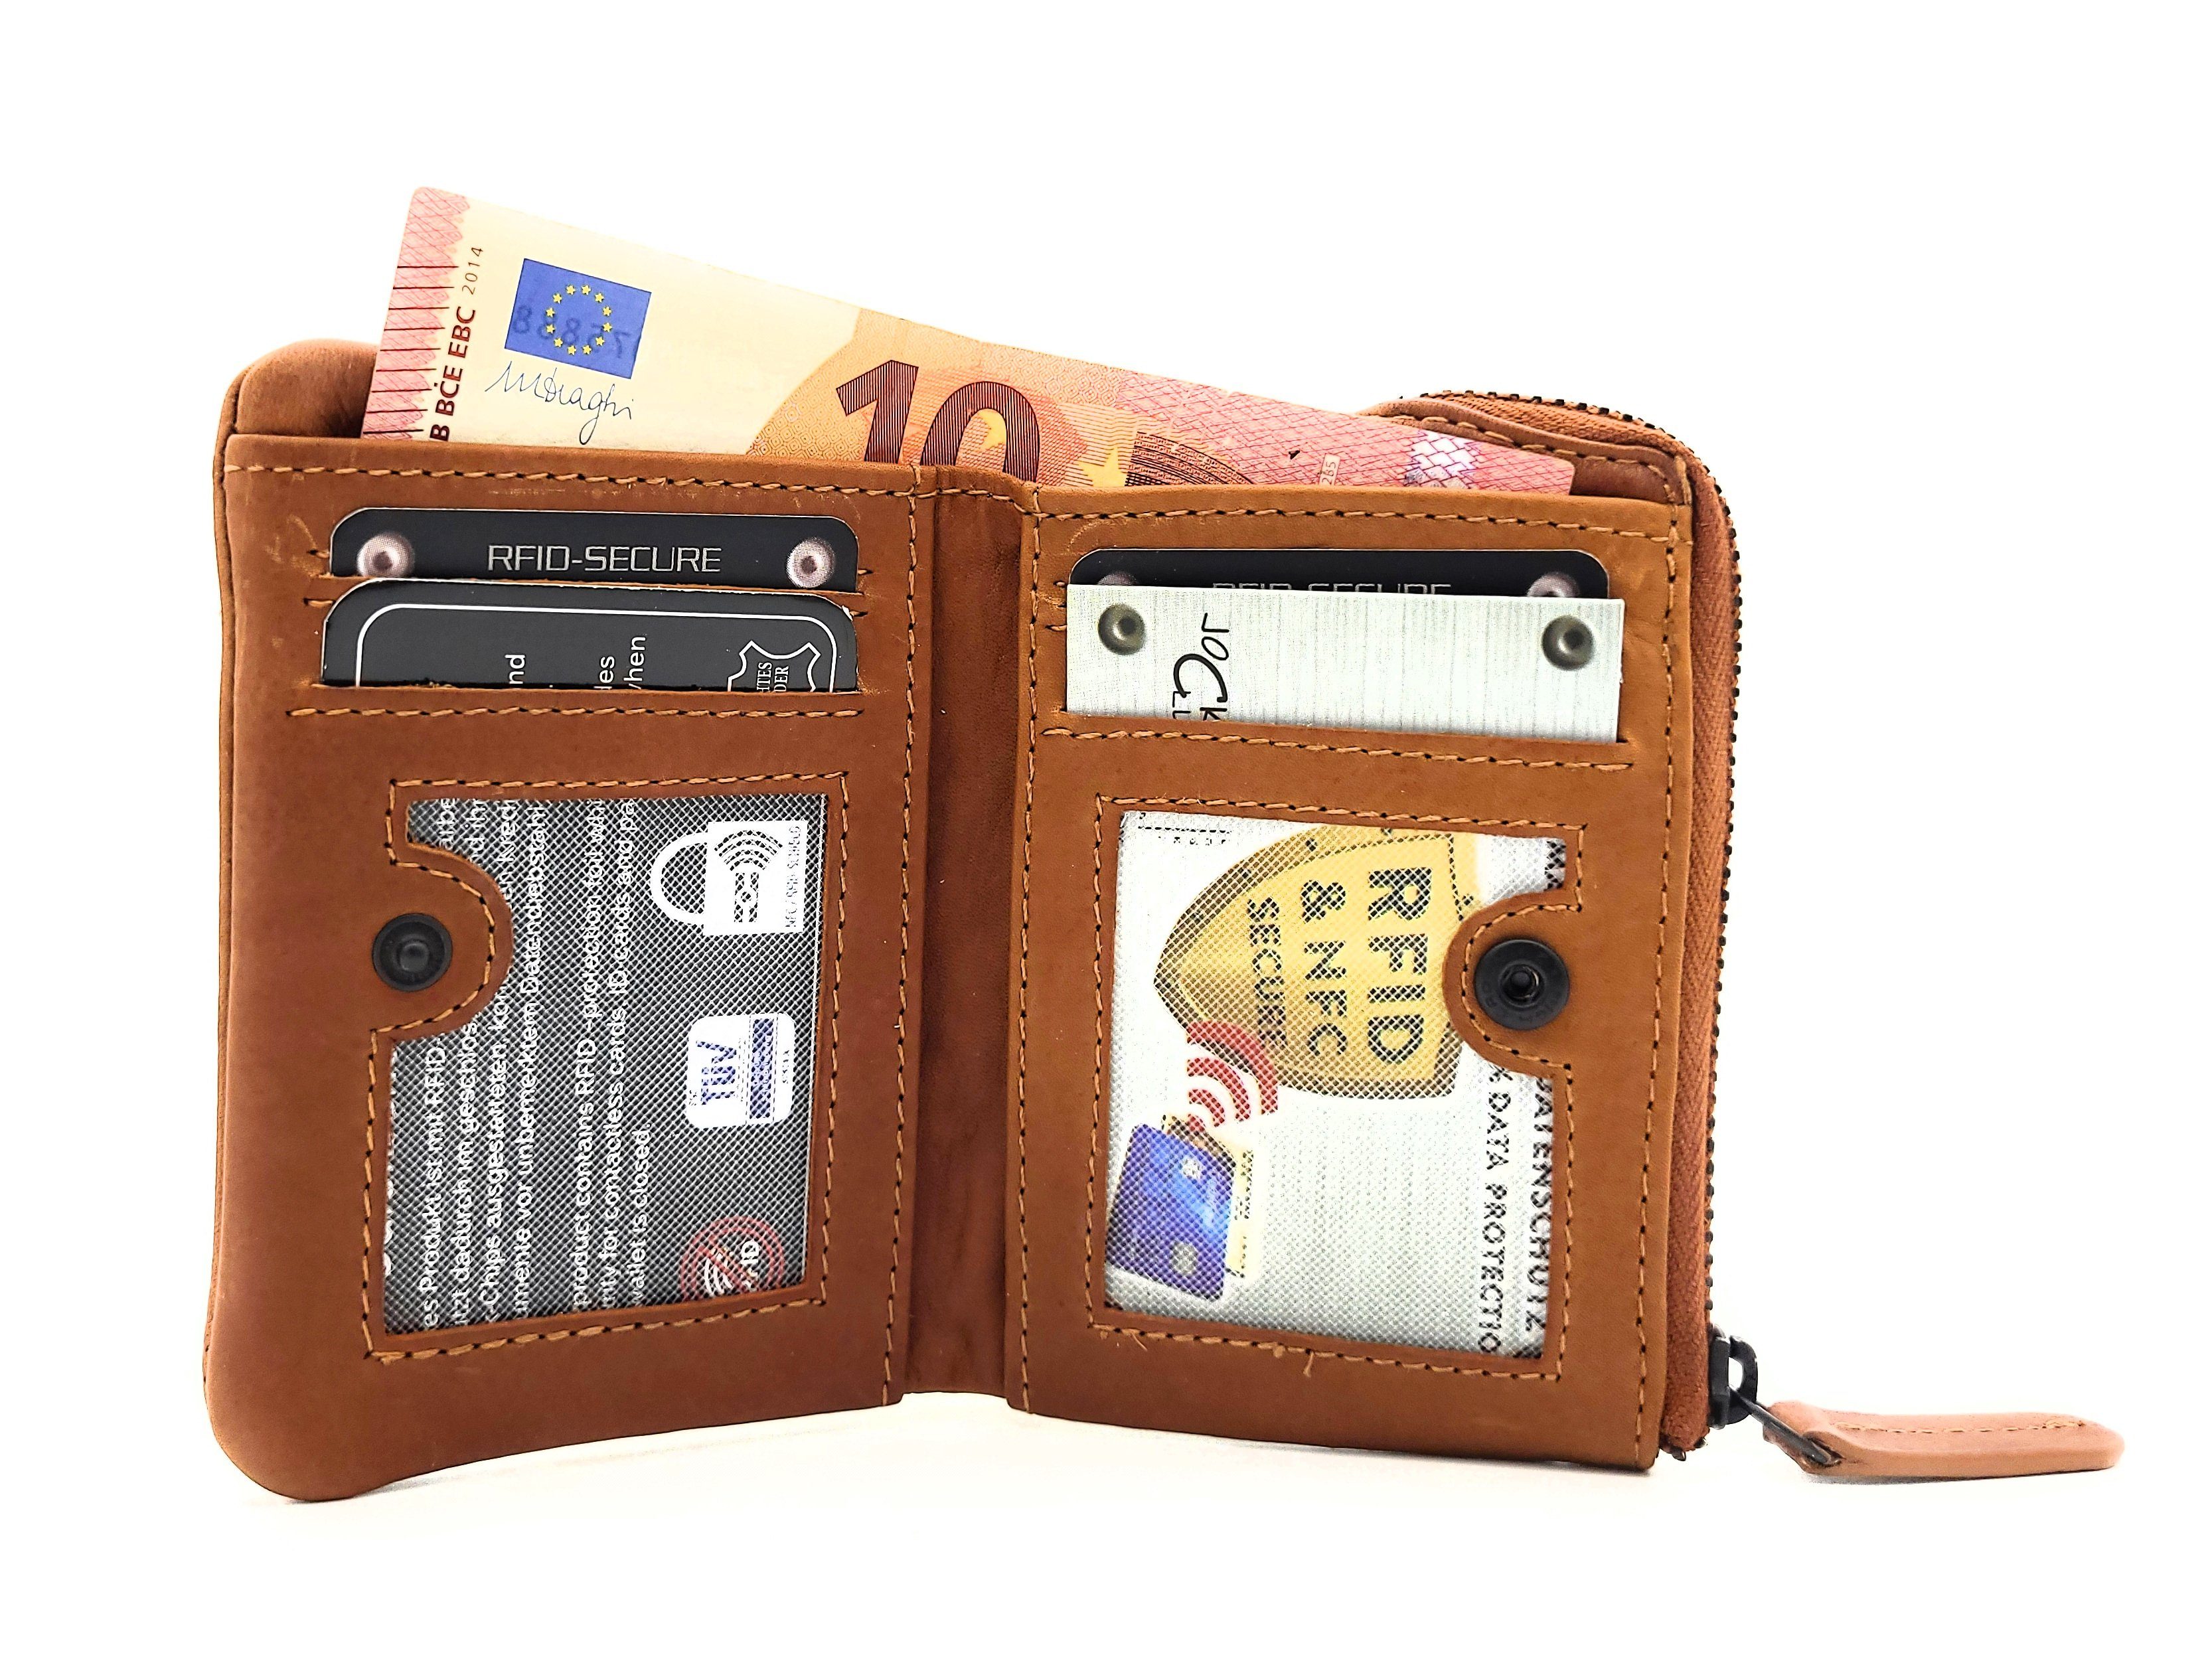 Mini mit kompaktes gewachstes Geldbörse RFID braun JOCKEY Format, vintage, CLUB Portemonnaie Schutz, Leder echt Rindleder, cognac